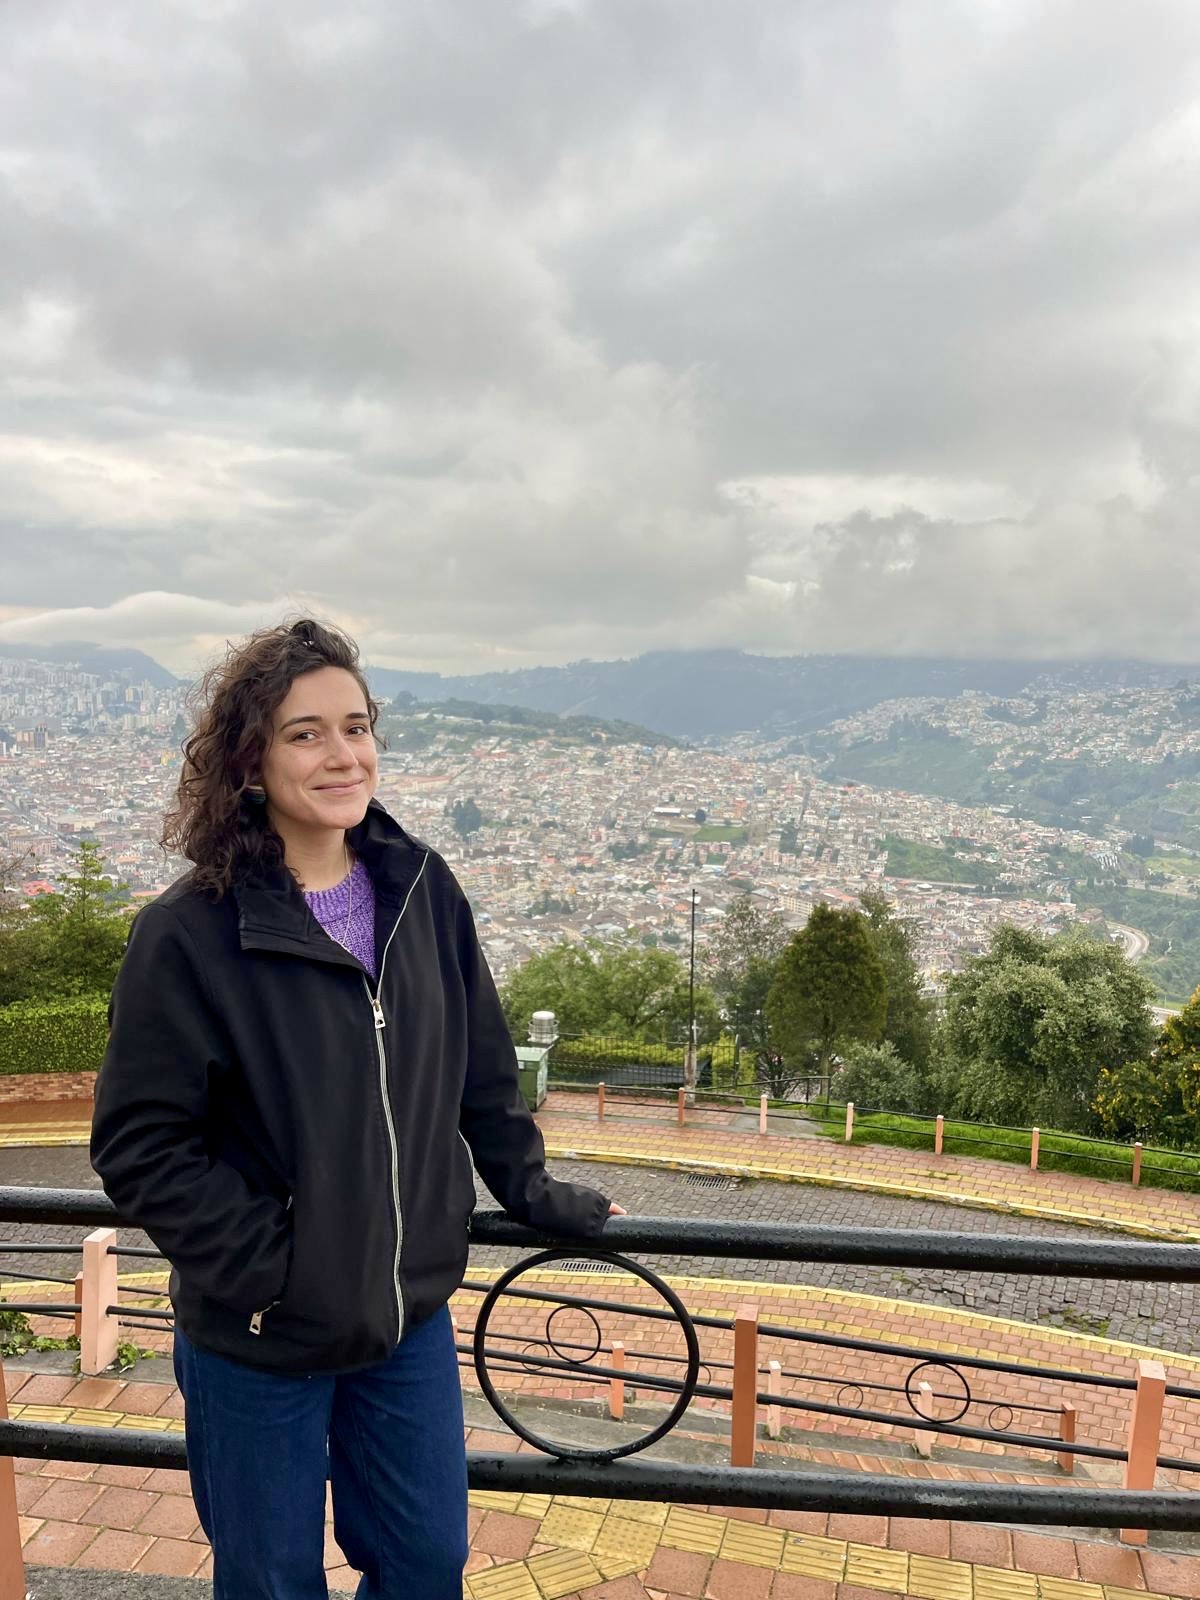 Almudena Rincón Sáez in Ecuador 